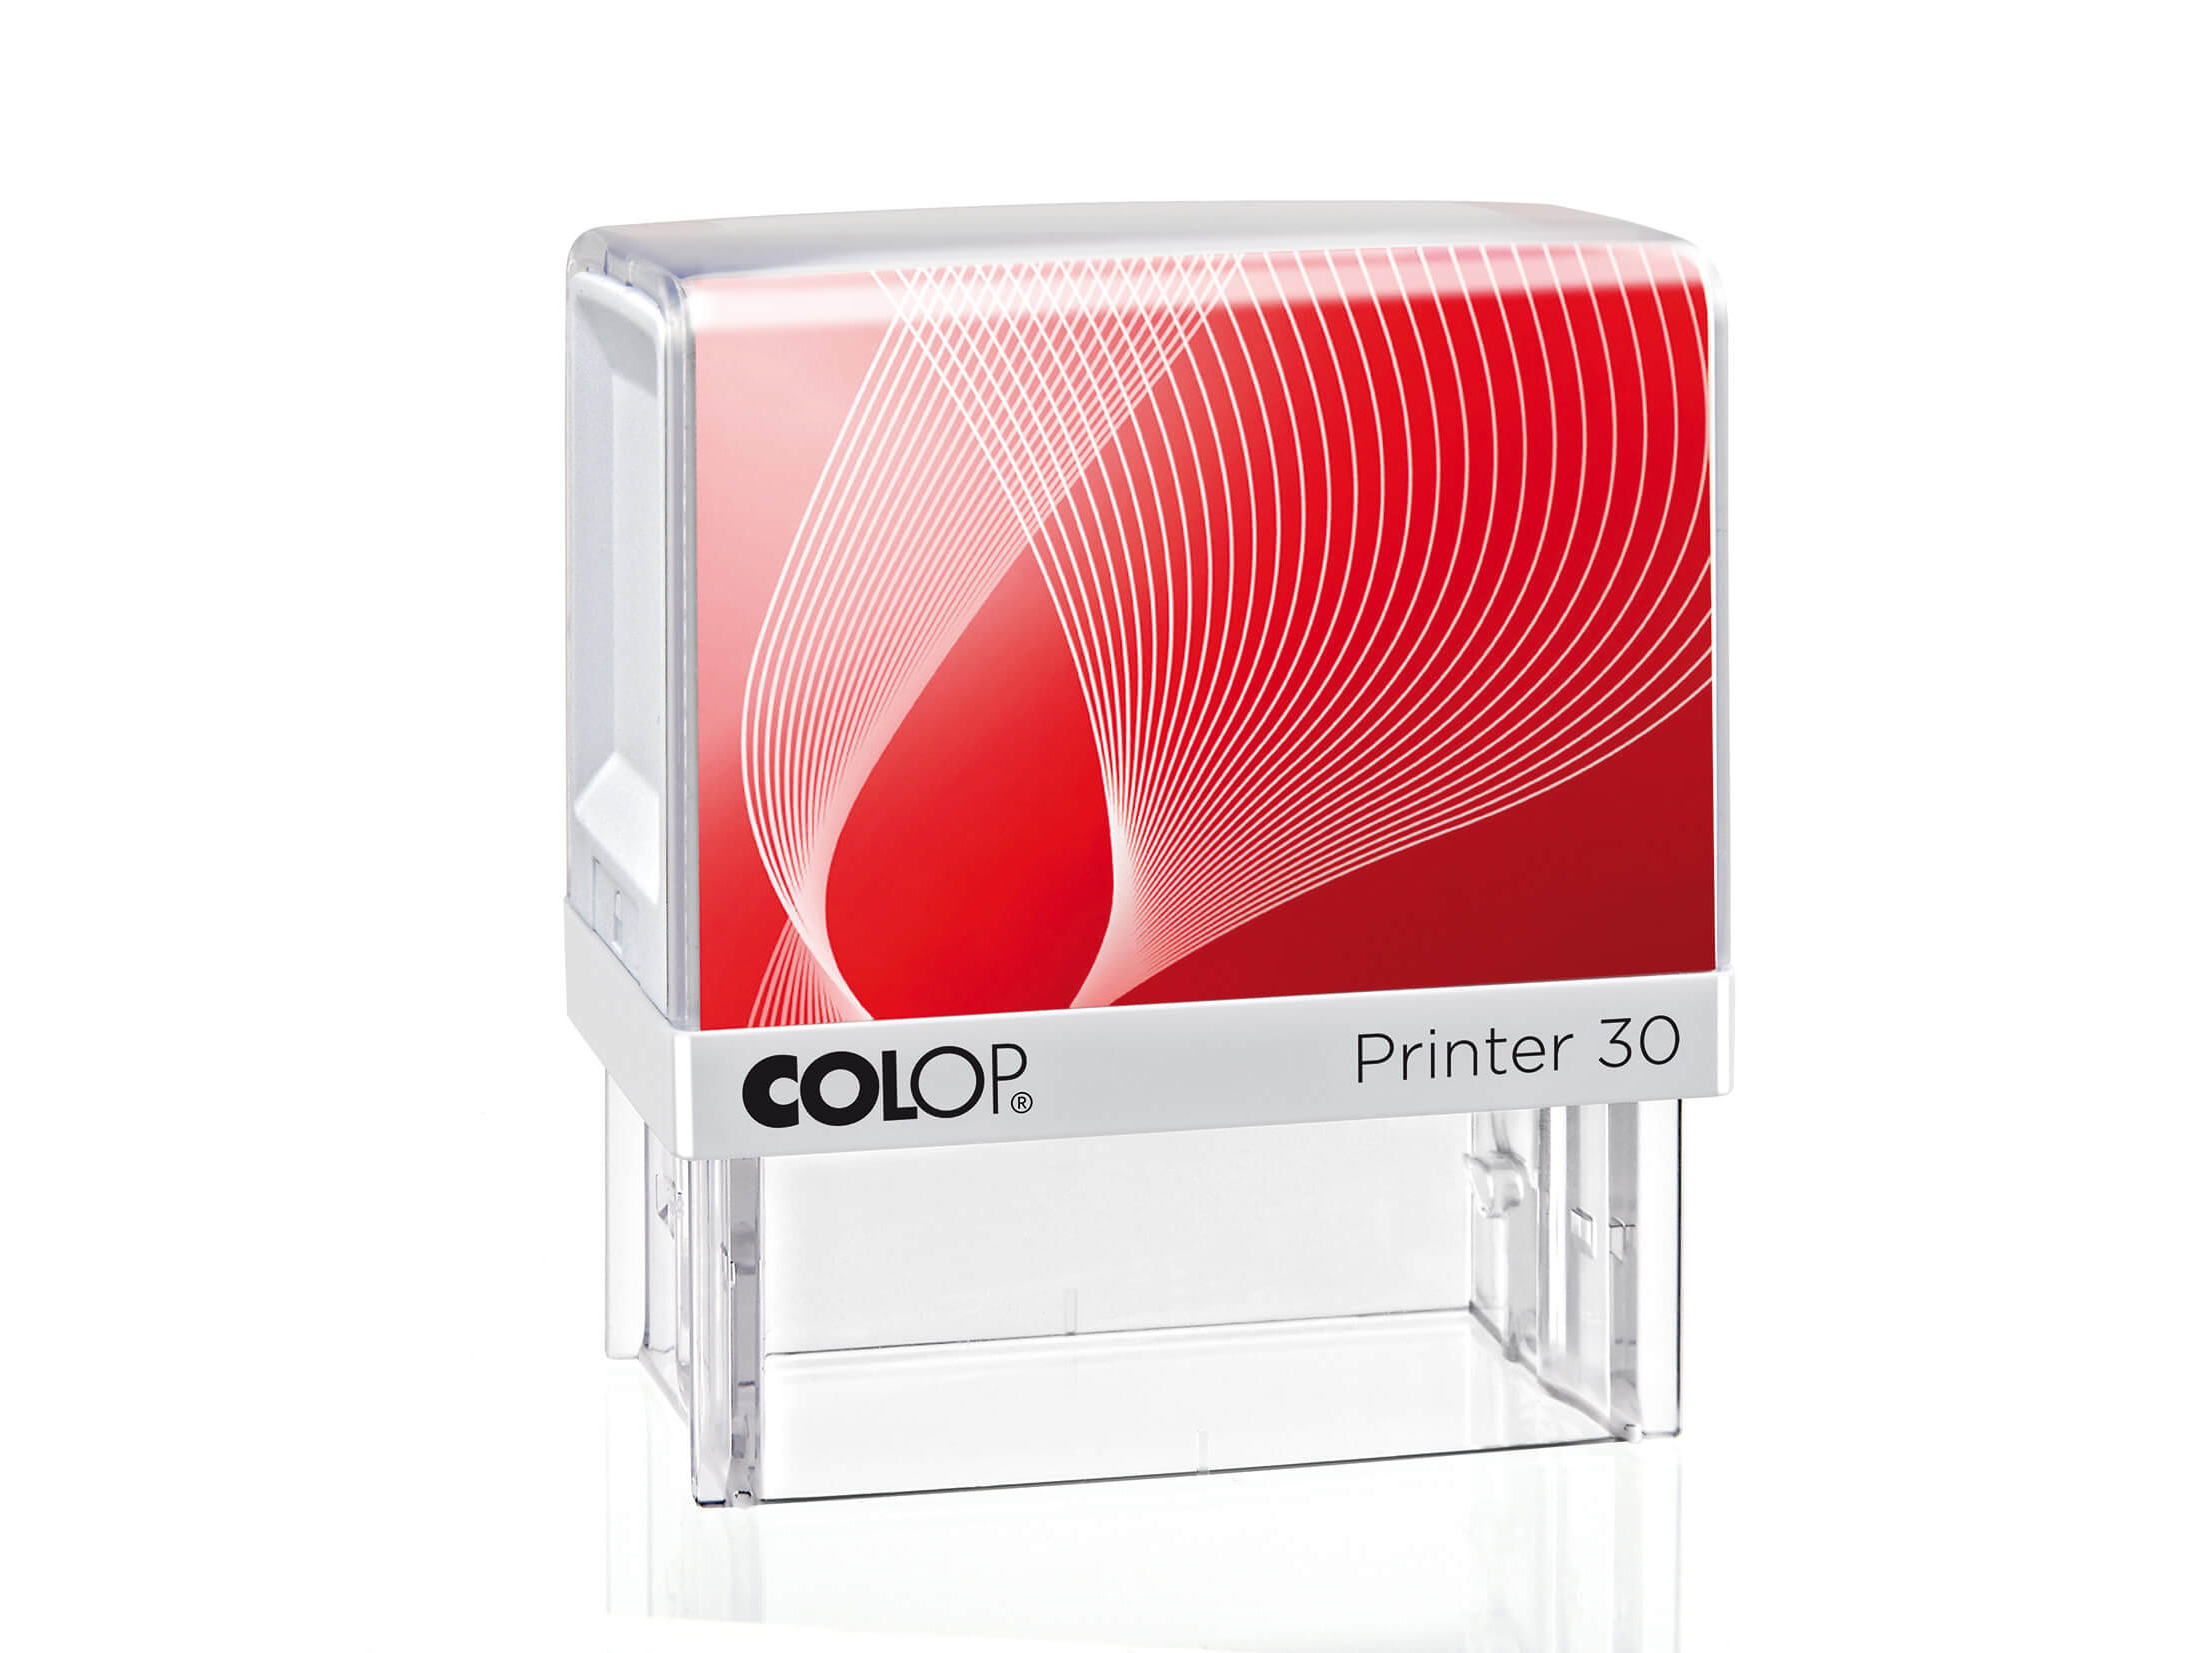 Timbro Autoinchiostrante Printer 30 - 18x47mm - 5 righe - Personalizzato